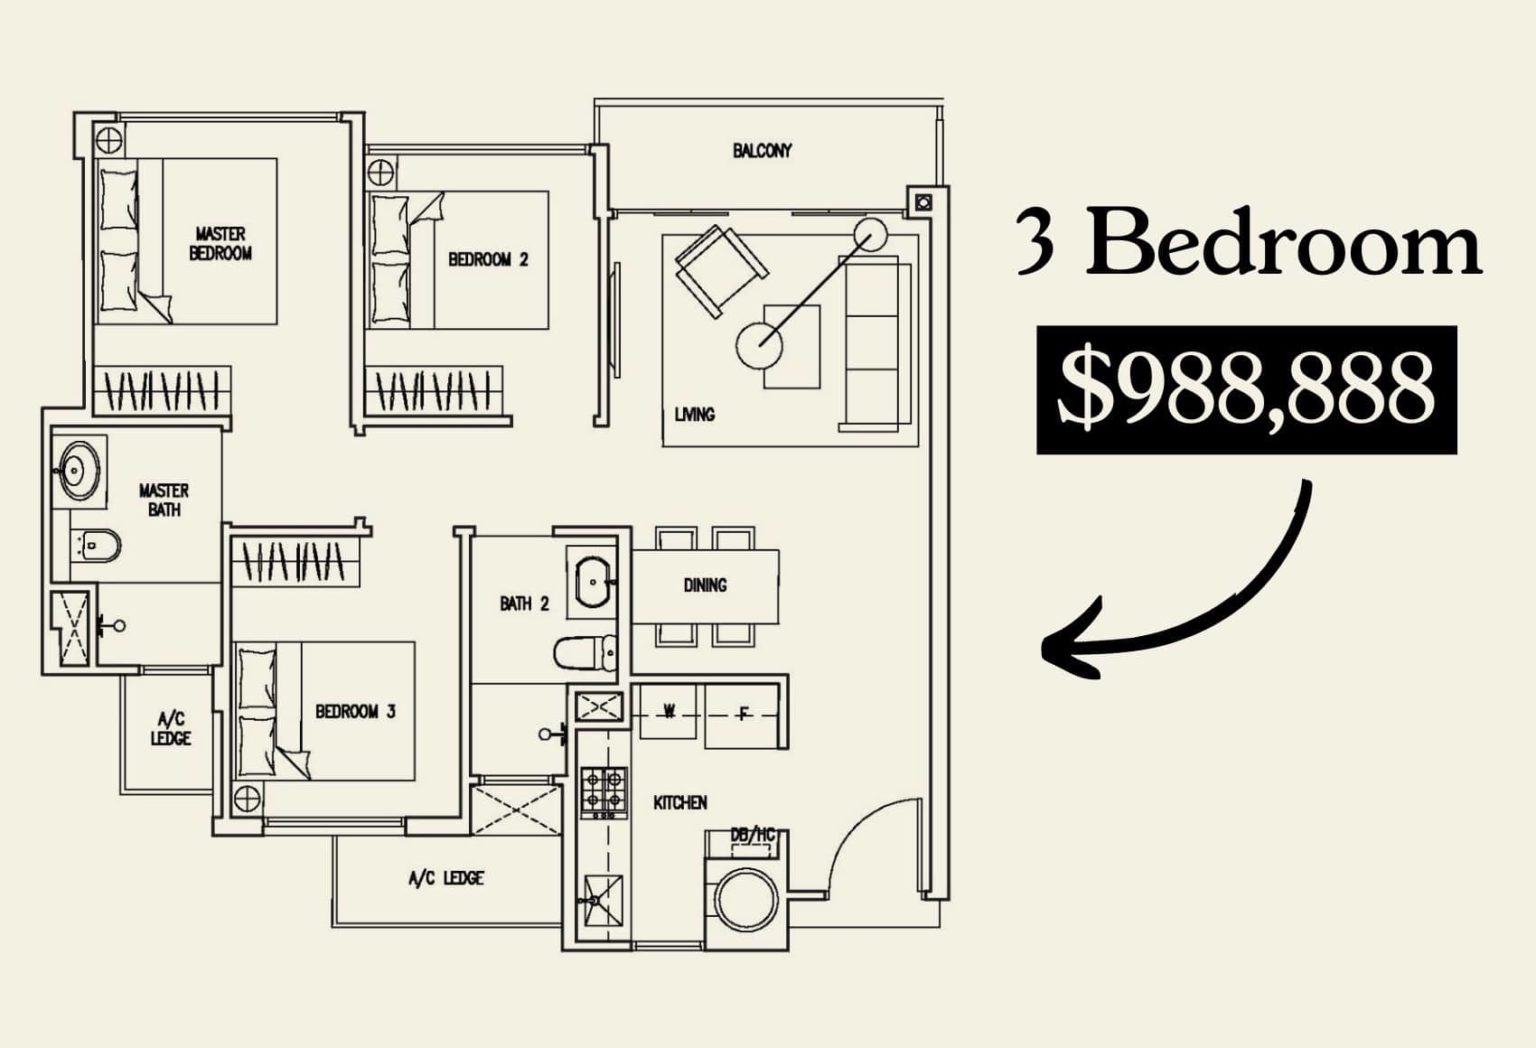 3 bedroom cheapest under 1 million